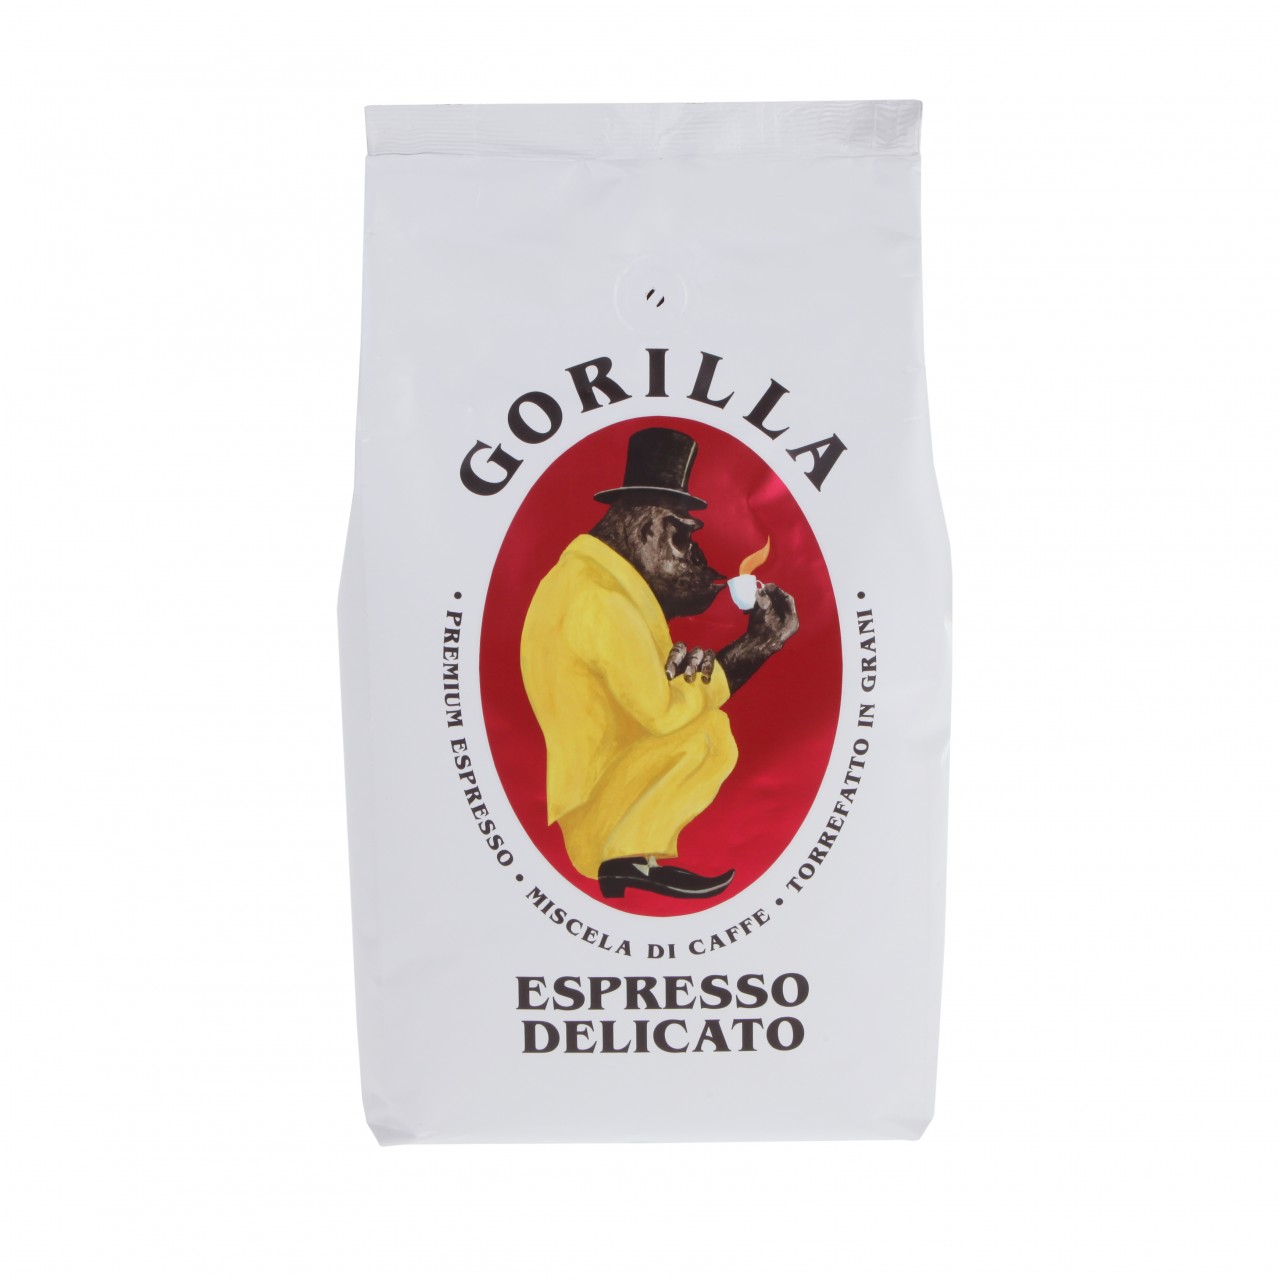 Gorilla Espresso Delicato